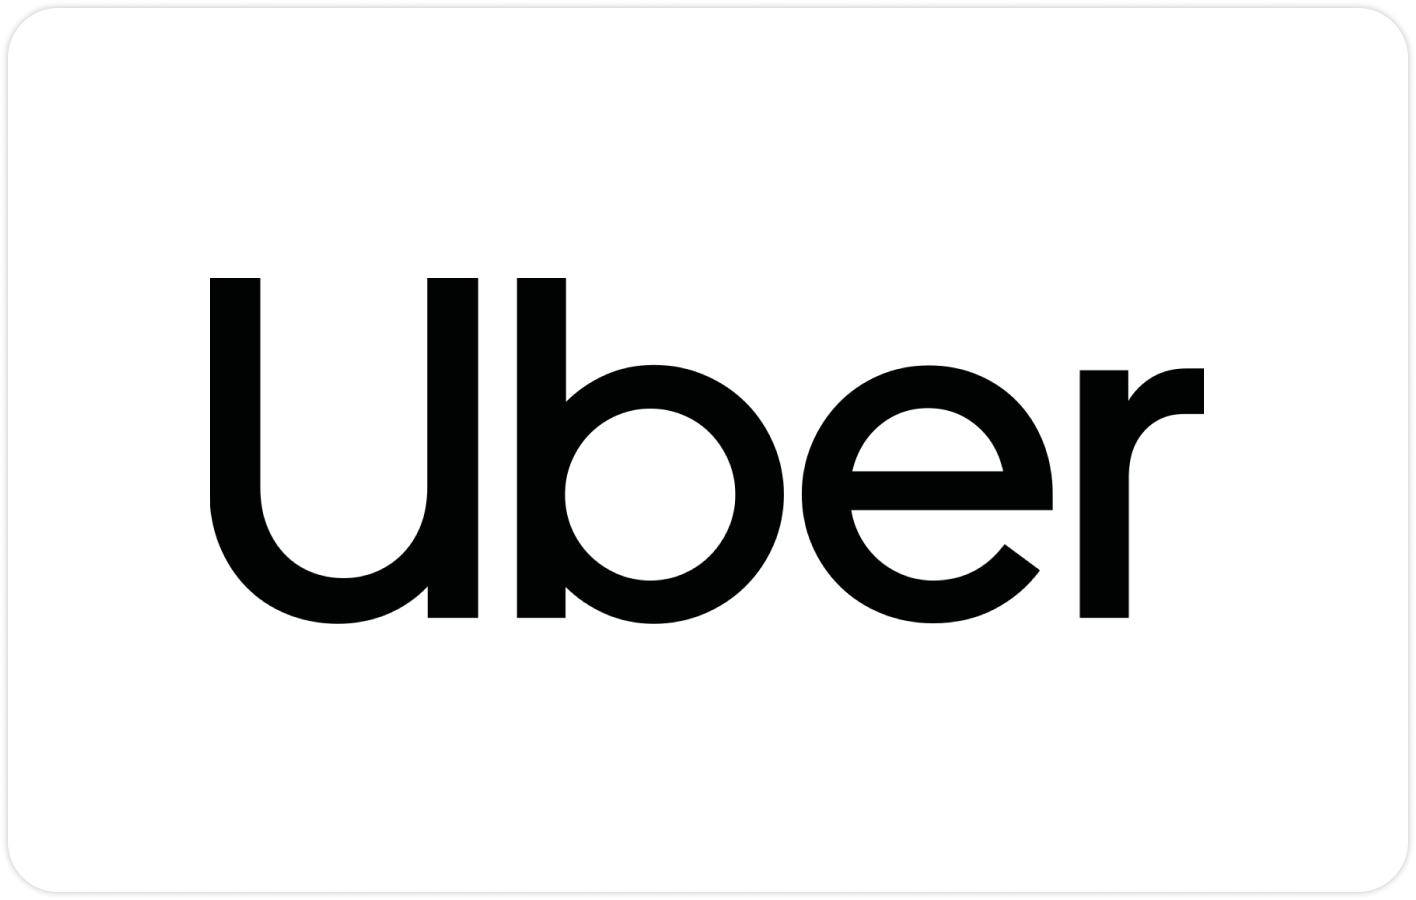 Carte-cadeau Uber